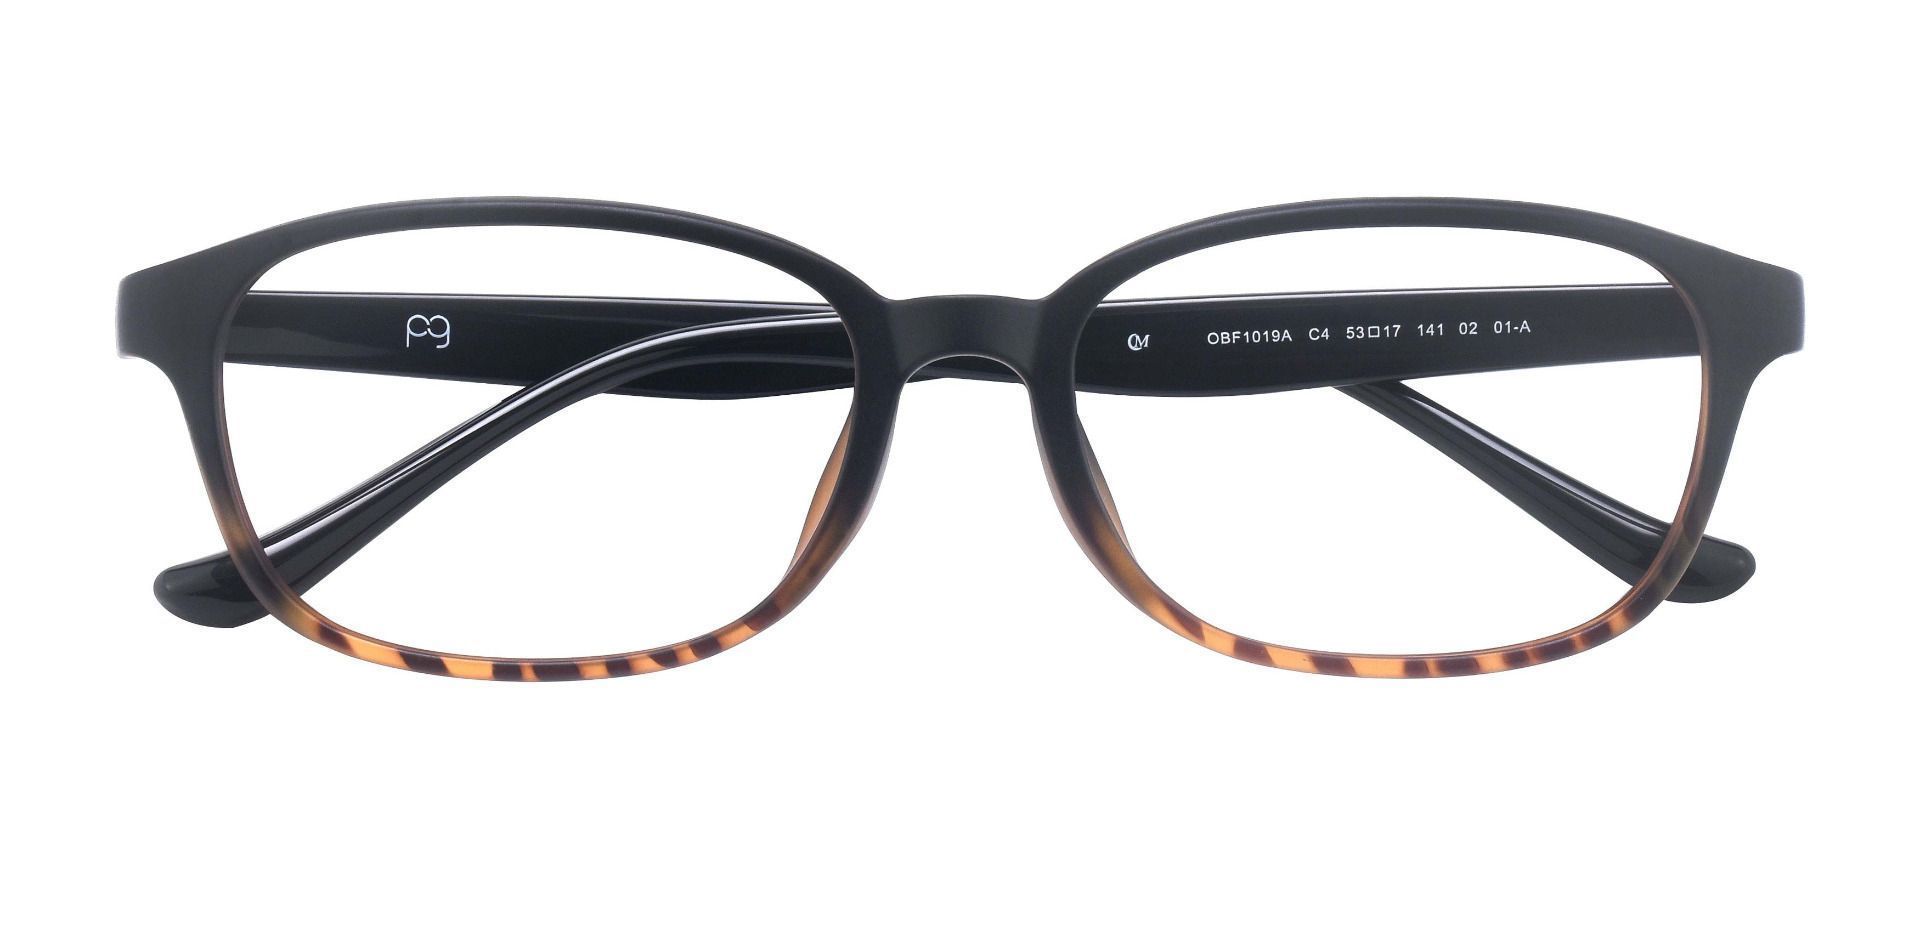 Hemingway Oval Progressive Glasses - Tortoise